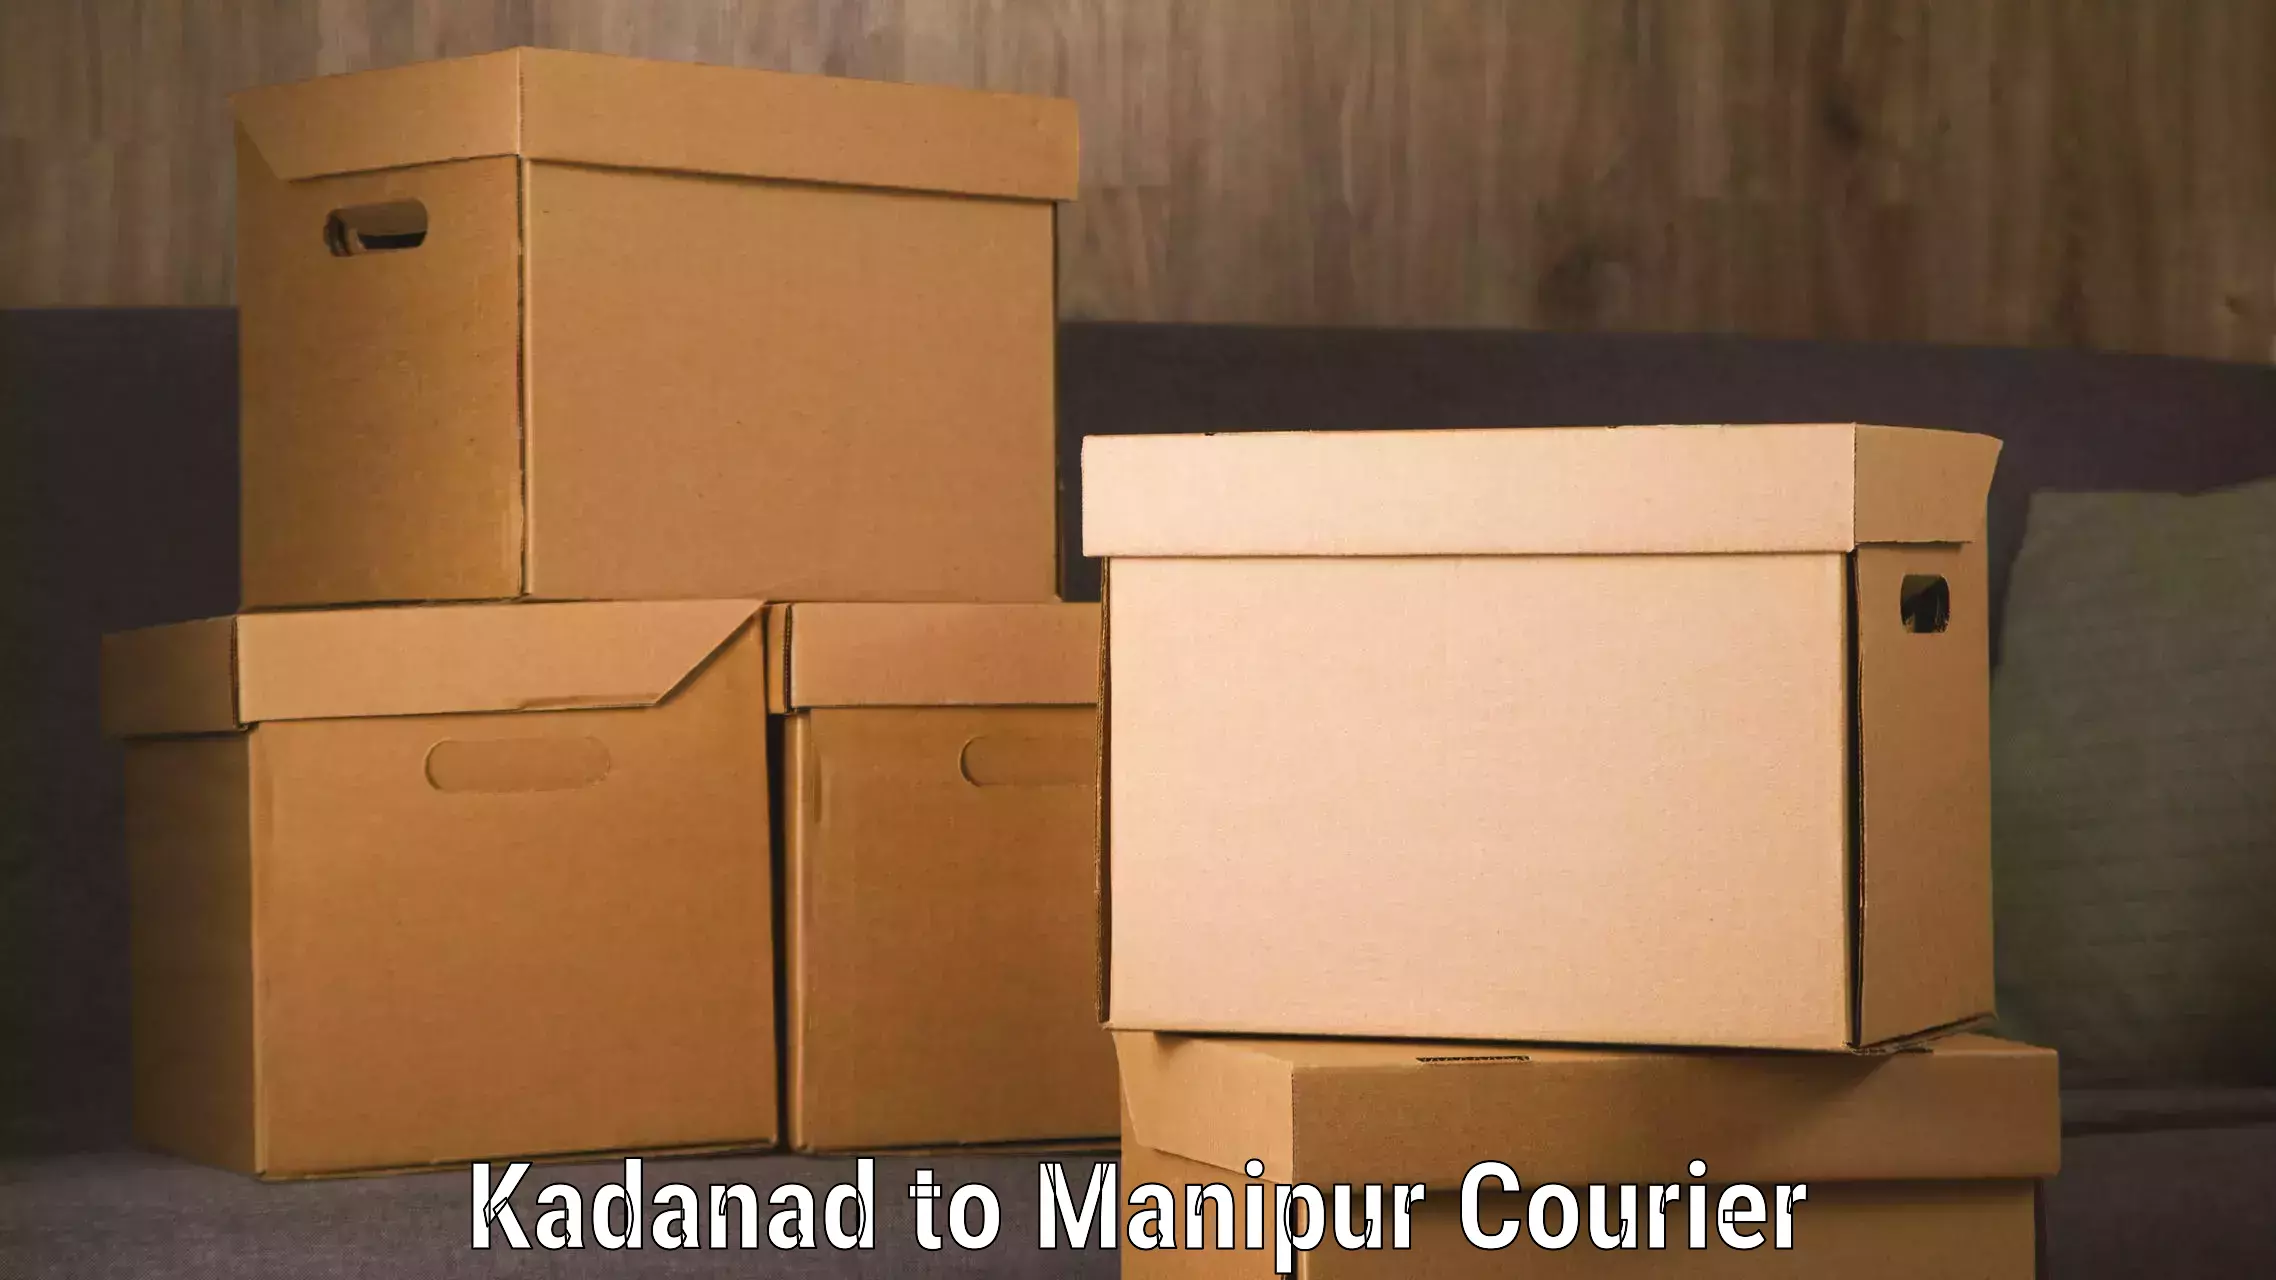 Smart shipping technology Kadanad to Thoubal